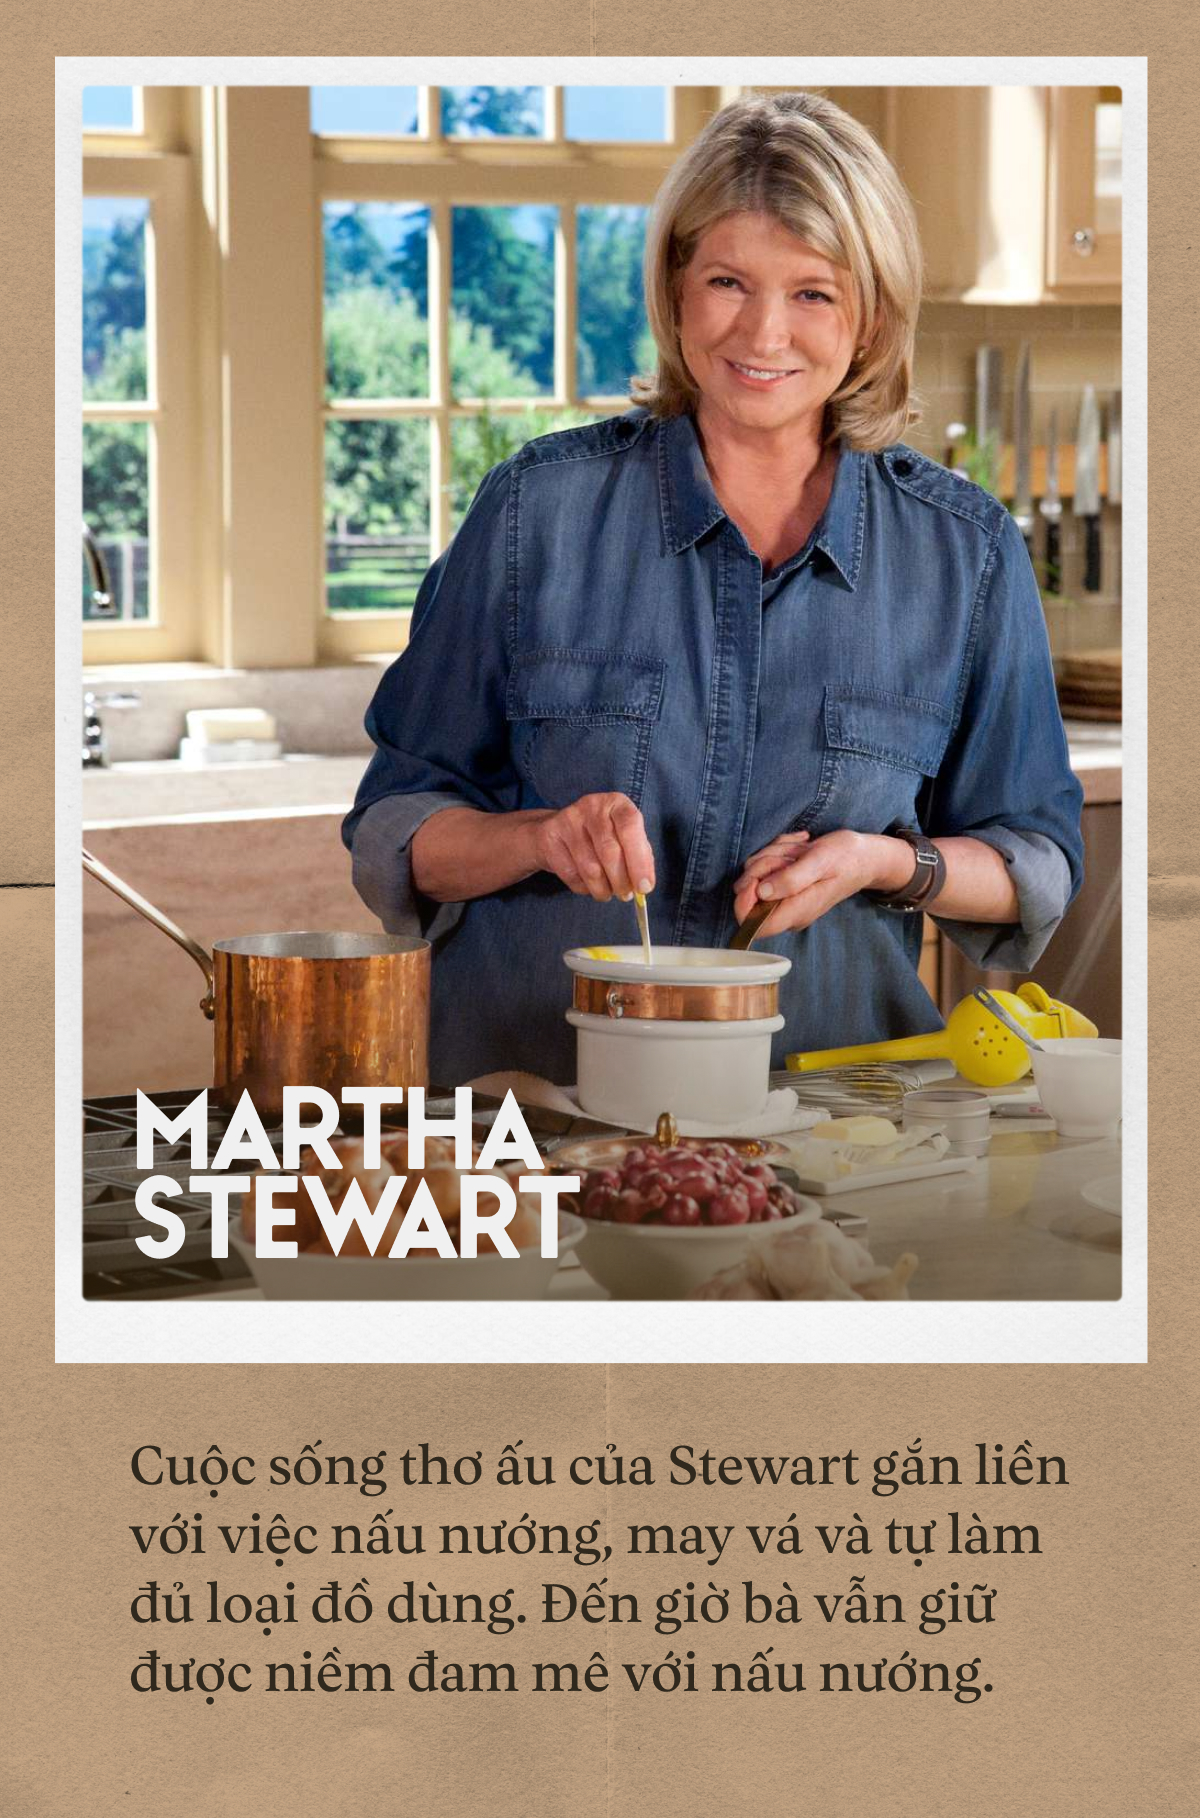 Martha Stewart: “Nữ hoàng kinh doanh” toàn tài của nước Mỹ, đập tan định kiến tuổi tác với bộ ảnh áo tắm ở tuổi 81 - Ảnh 2.